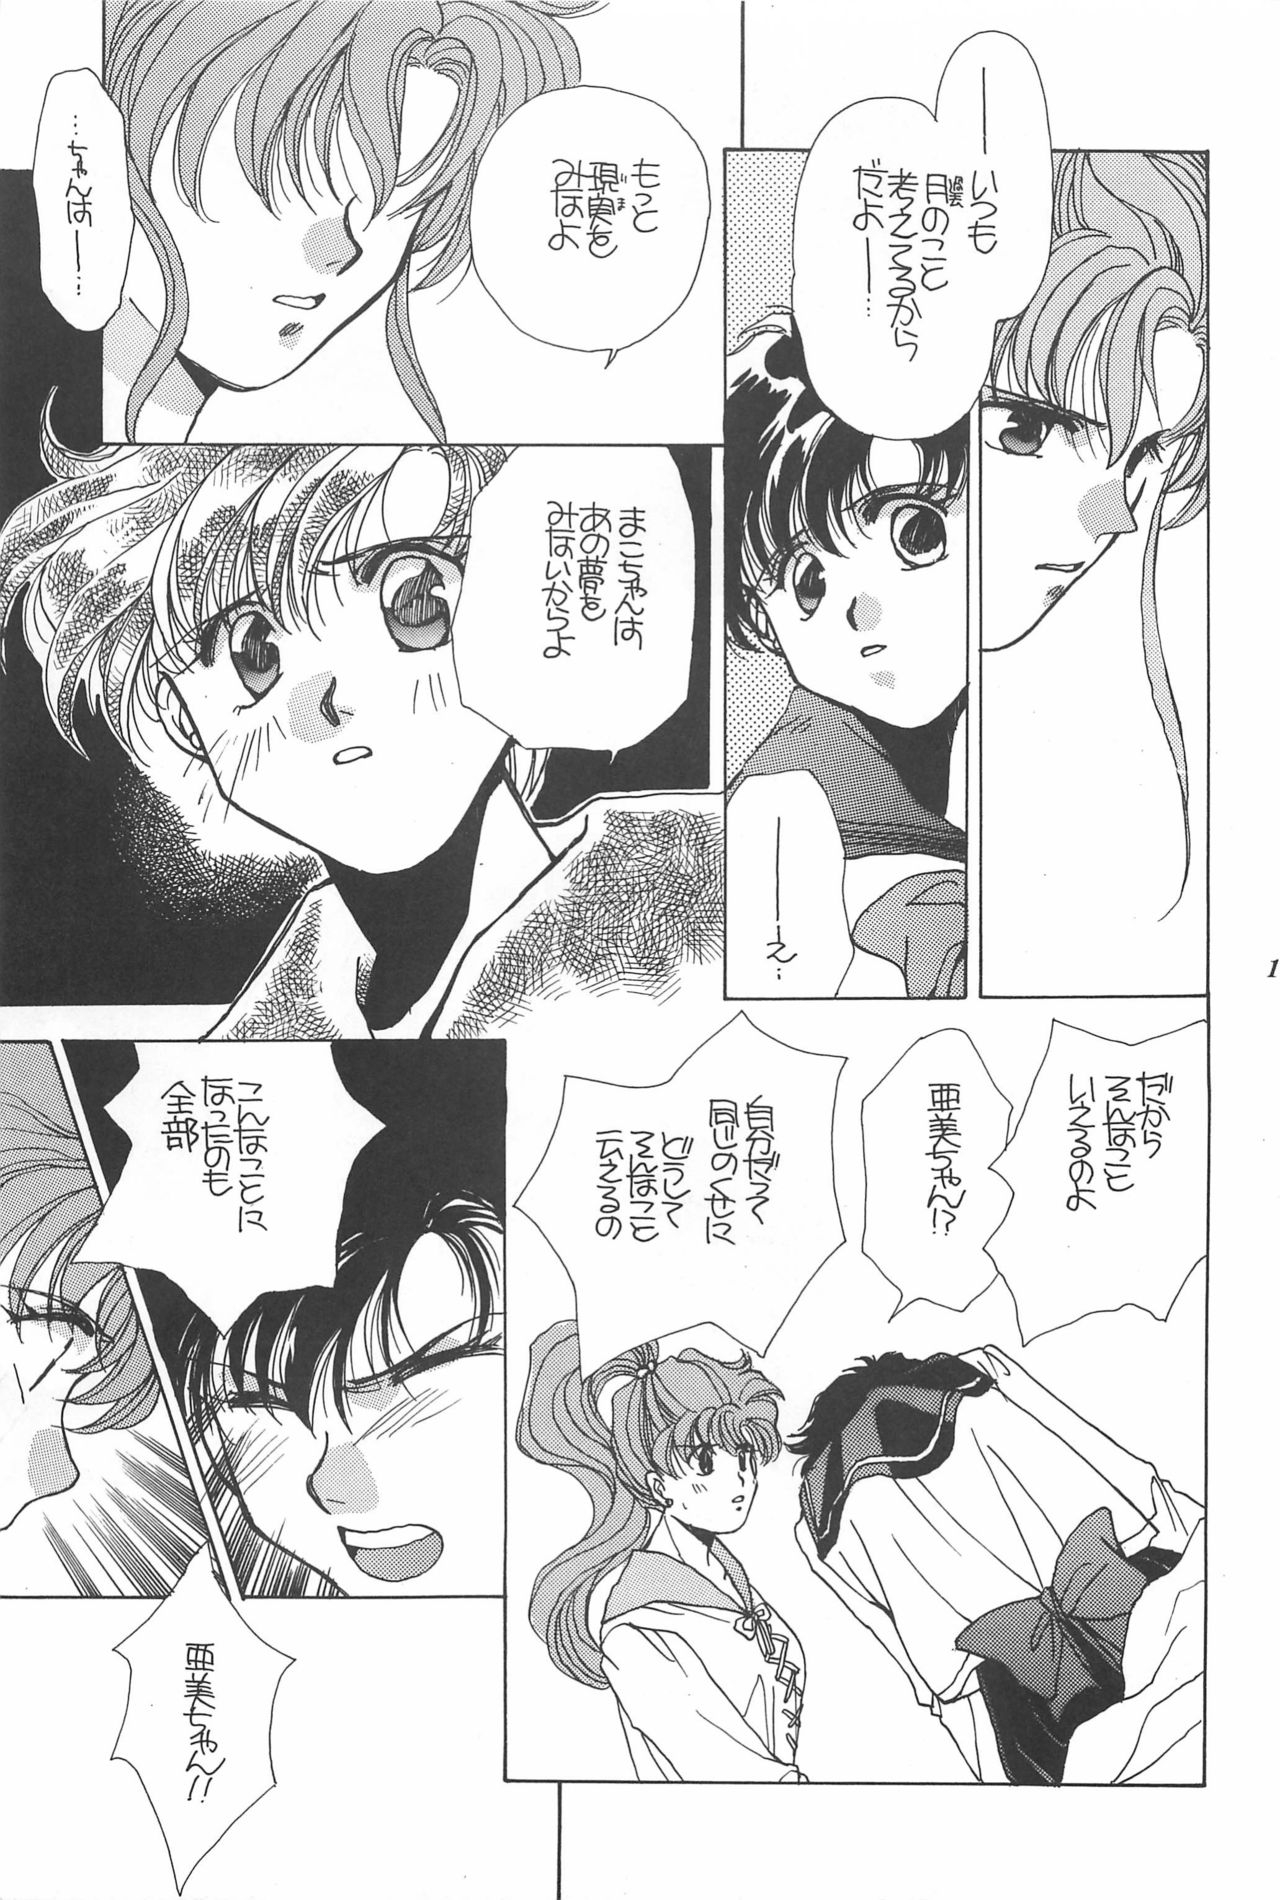 [Hello World (Muttri Moony)] Kaze no You ni Yume no You ni - Sailor Moon Collection (Sailor Moon) 184